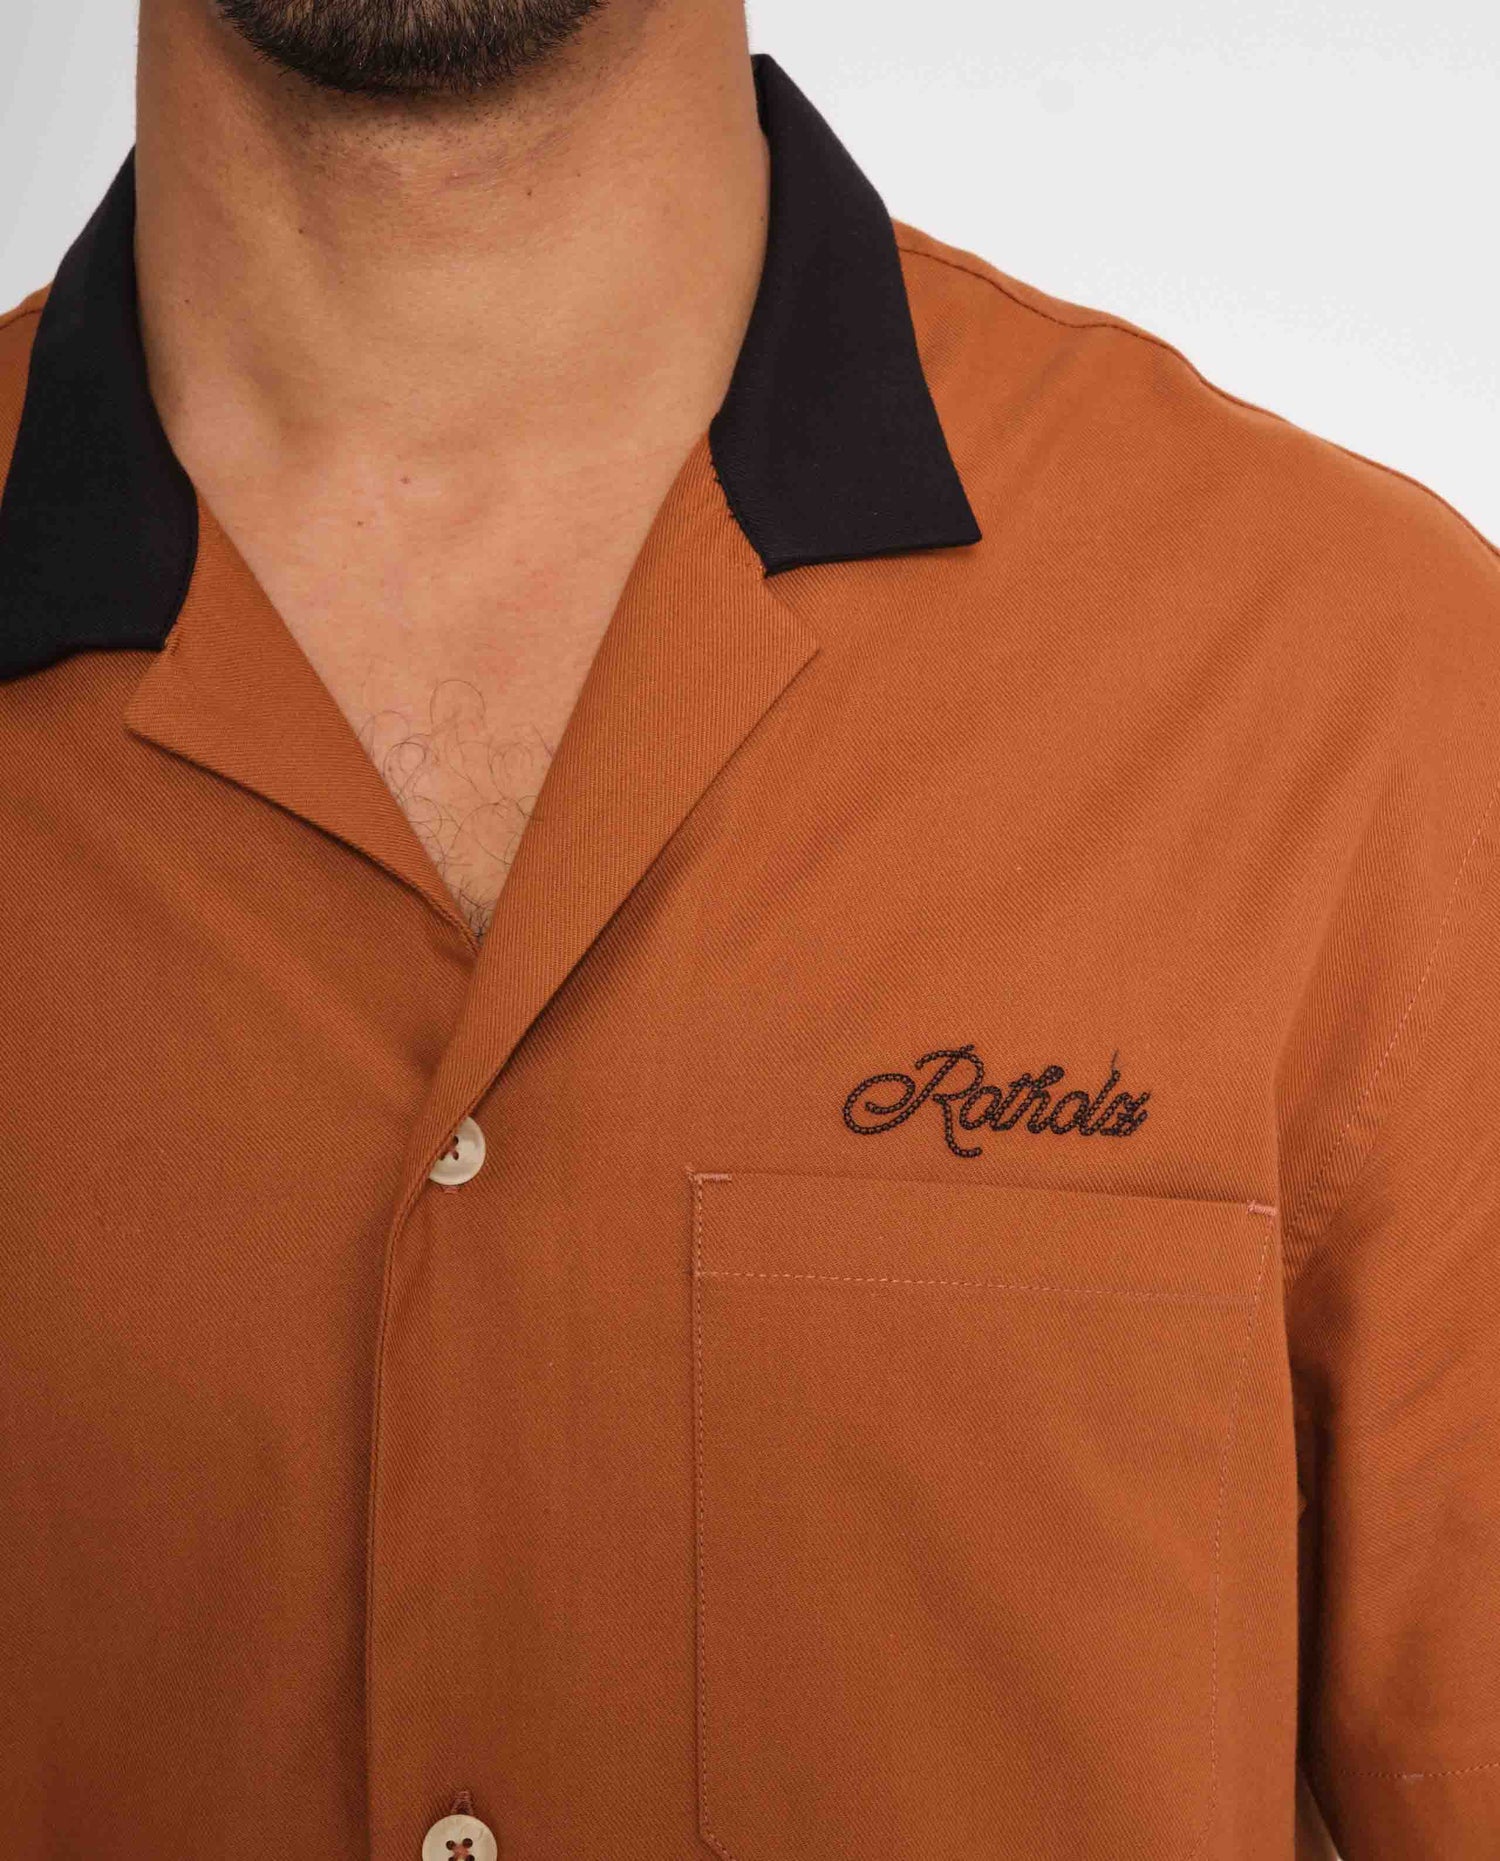 marché commun rotholz homme chemise manches courtes bowling coton biologique terradotta